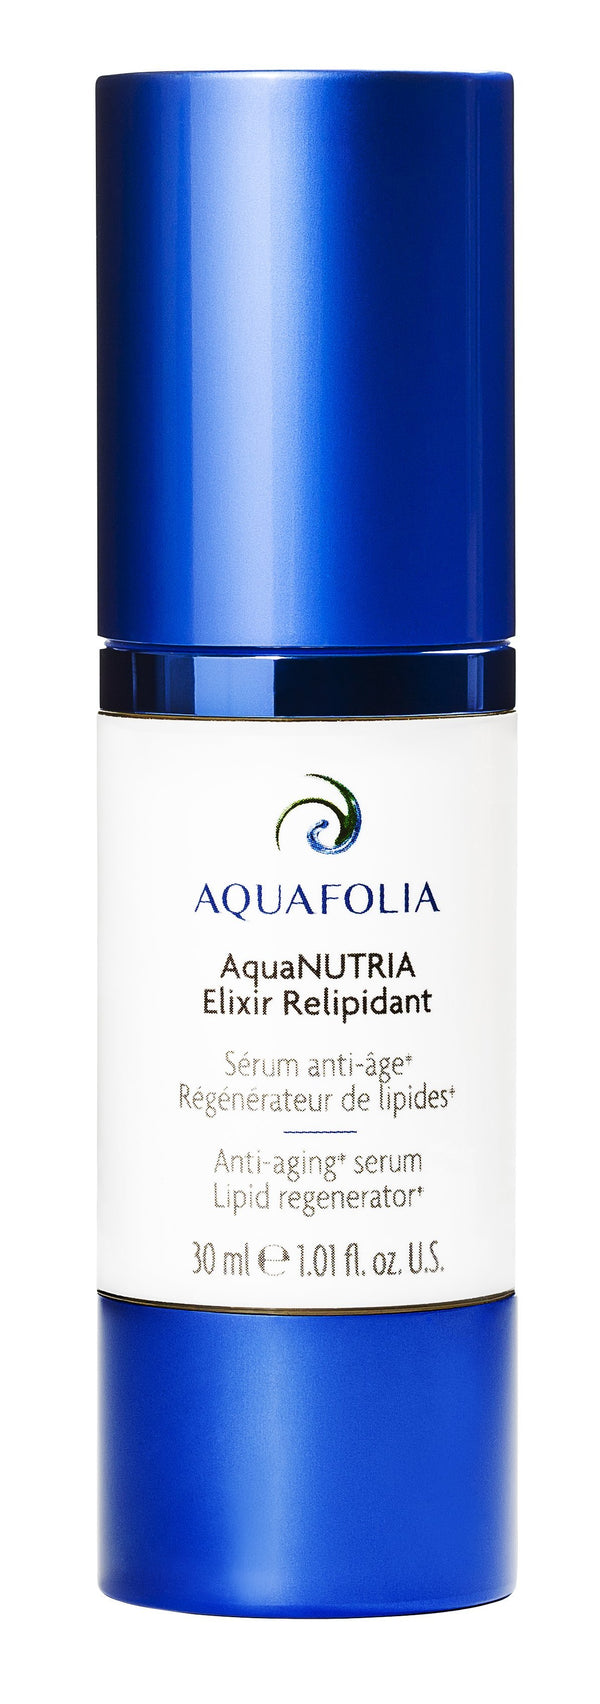 AquaNUTRIA Elixir Relipidant - cliniqueconceptm